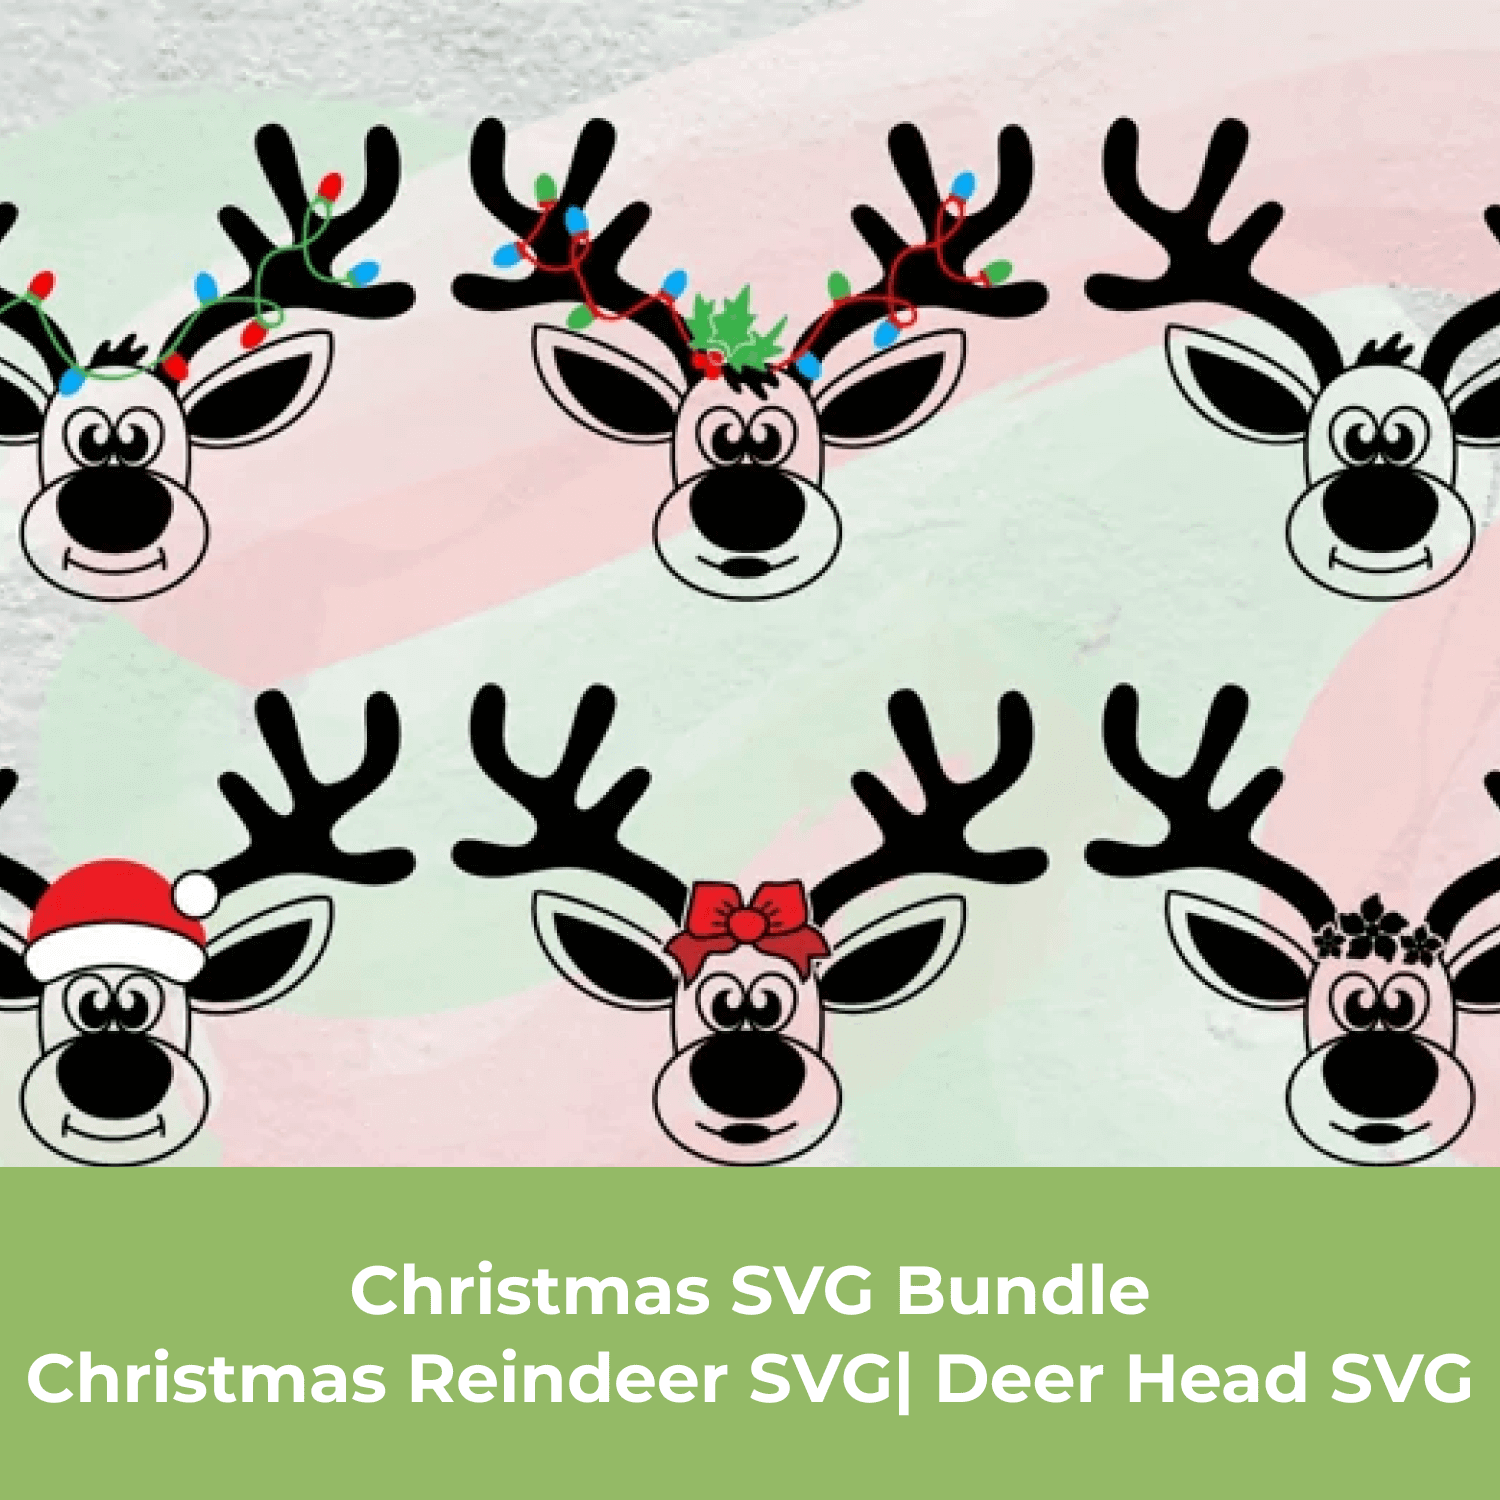 Christmas Reindeer SVG.